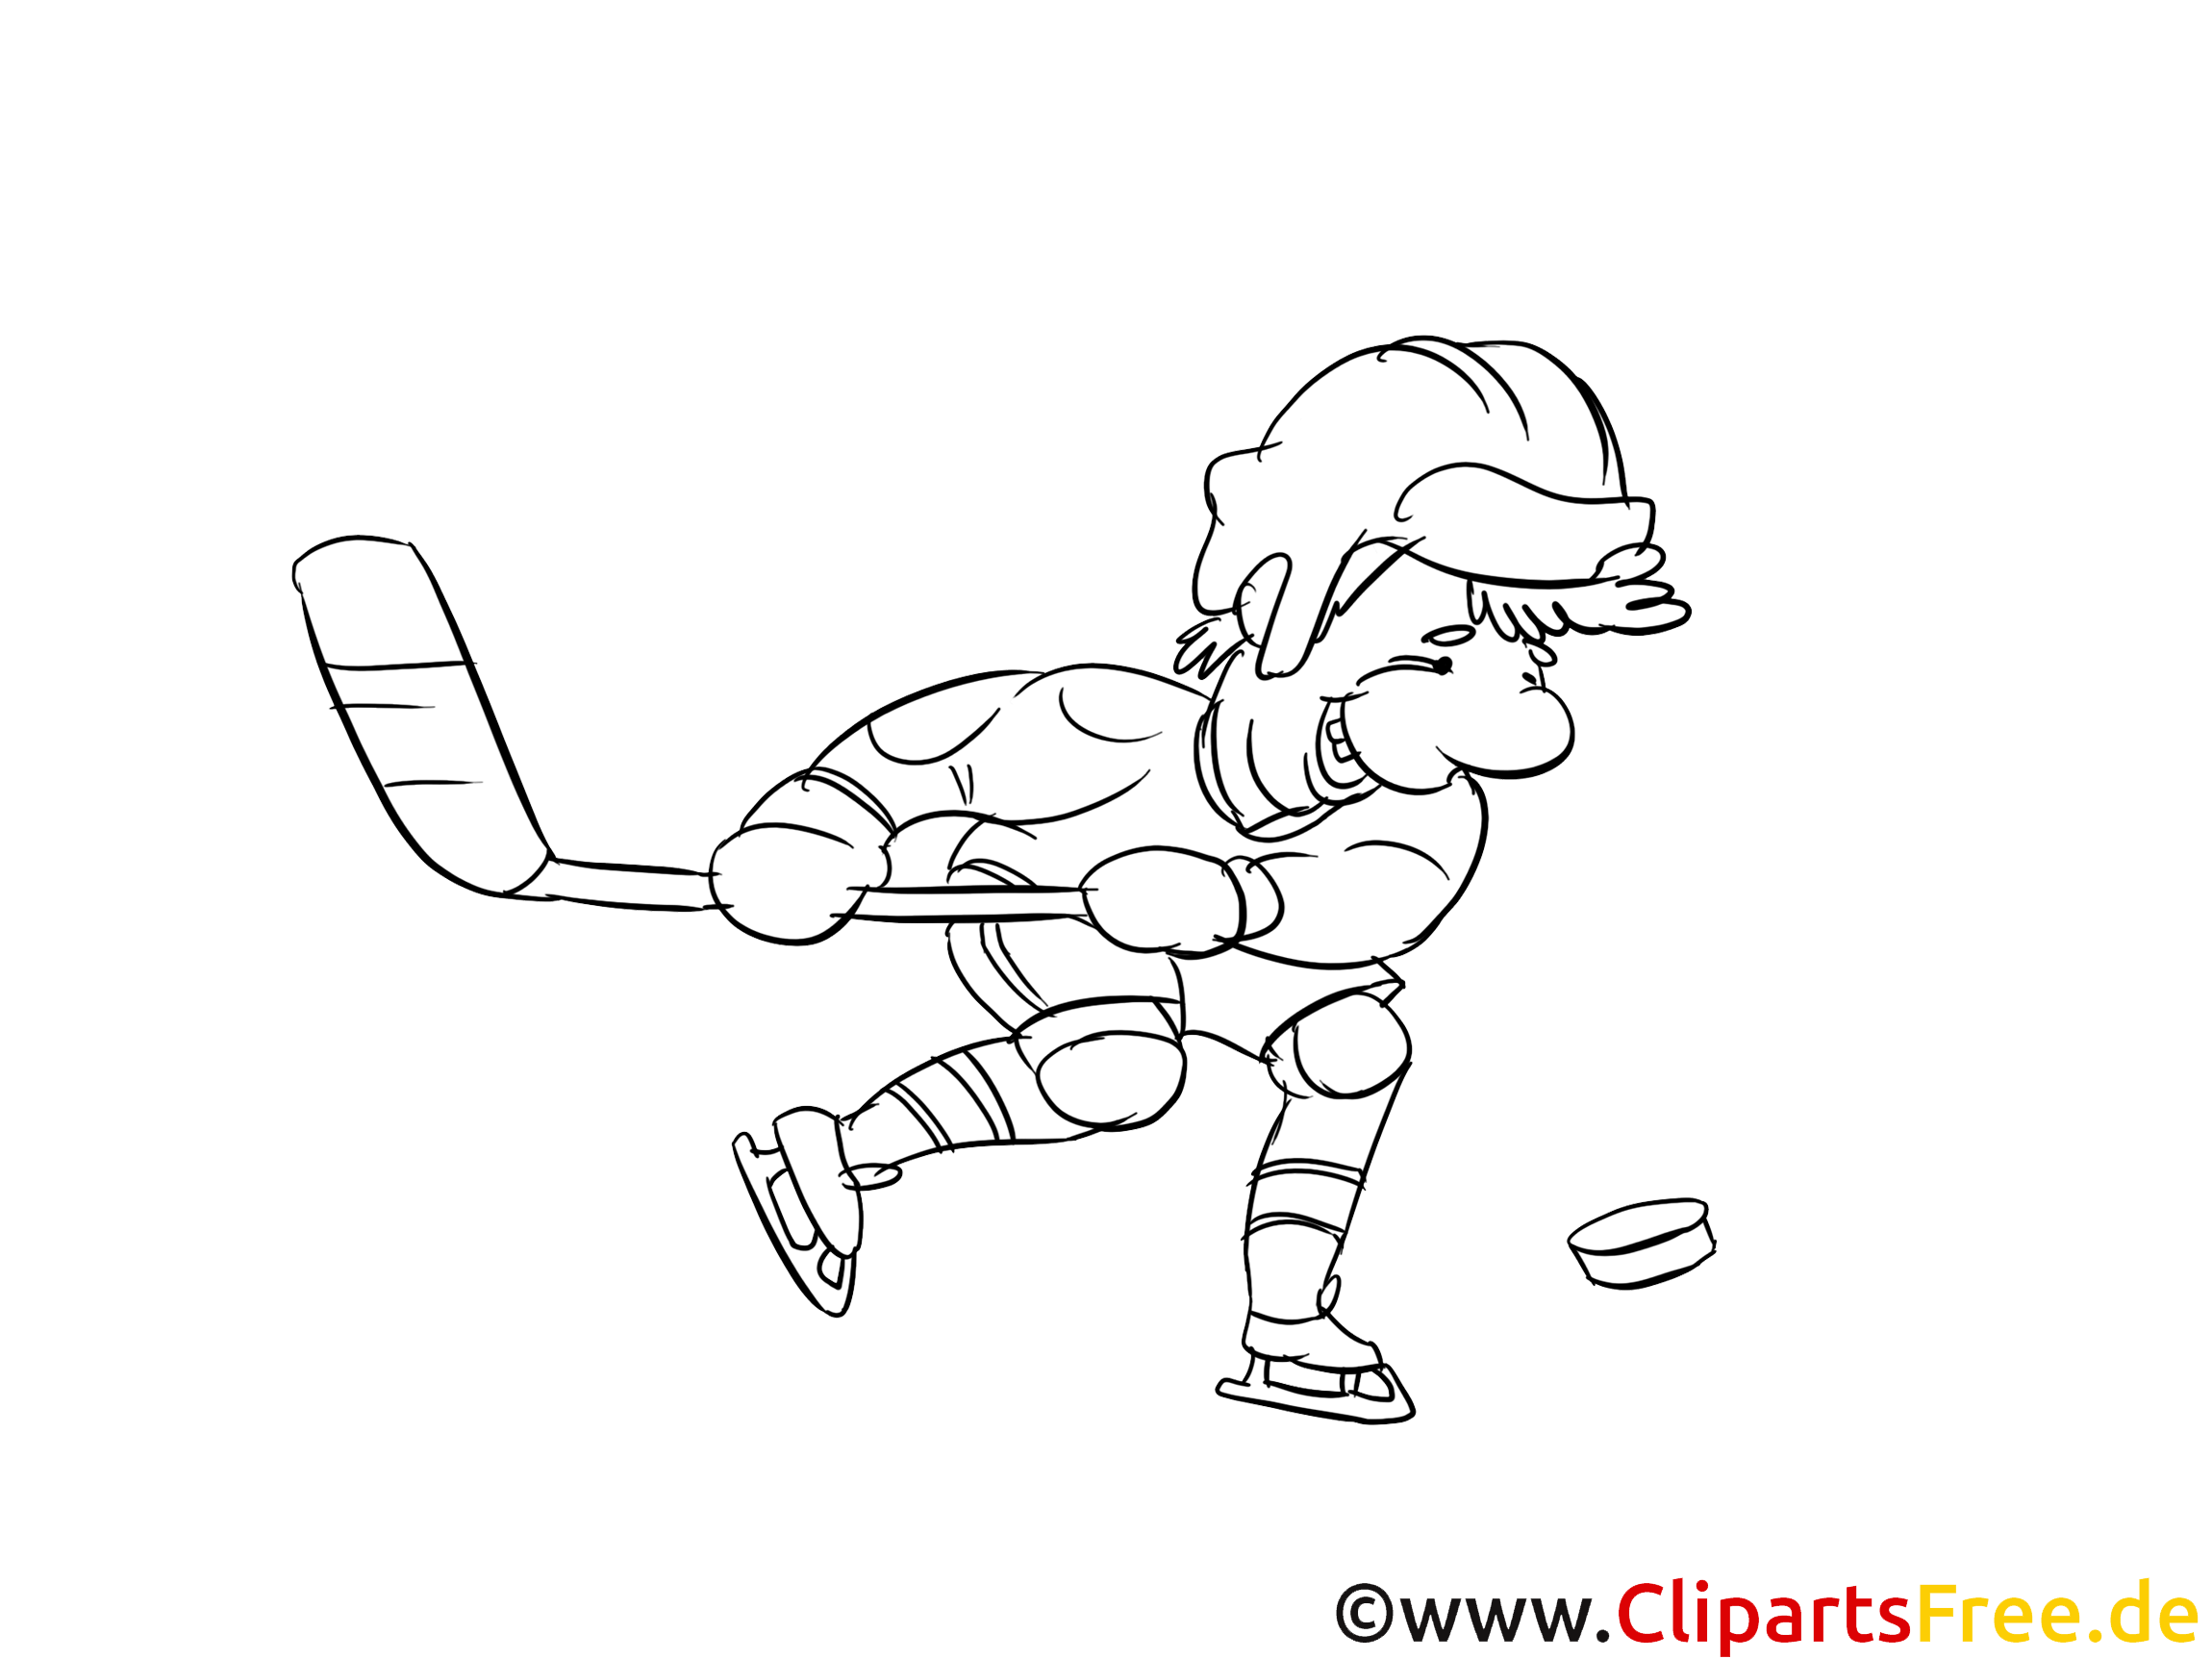 Sport d'hiver image – Hockey images à colorier